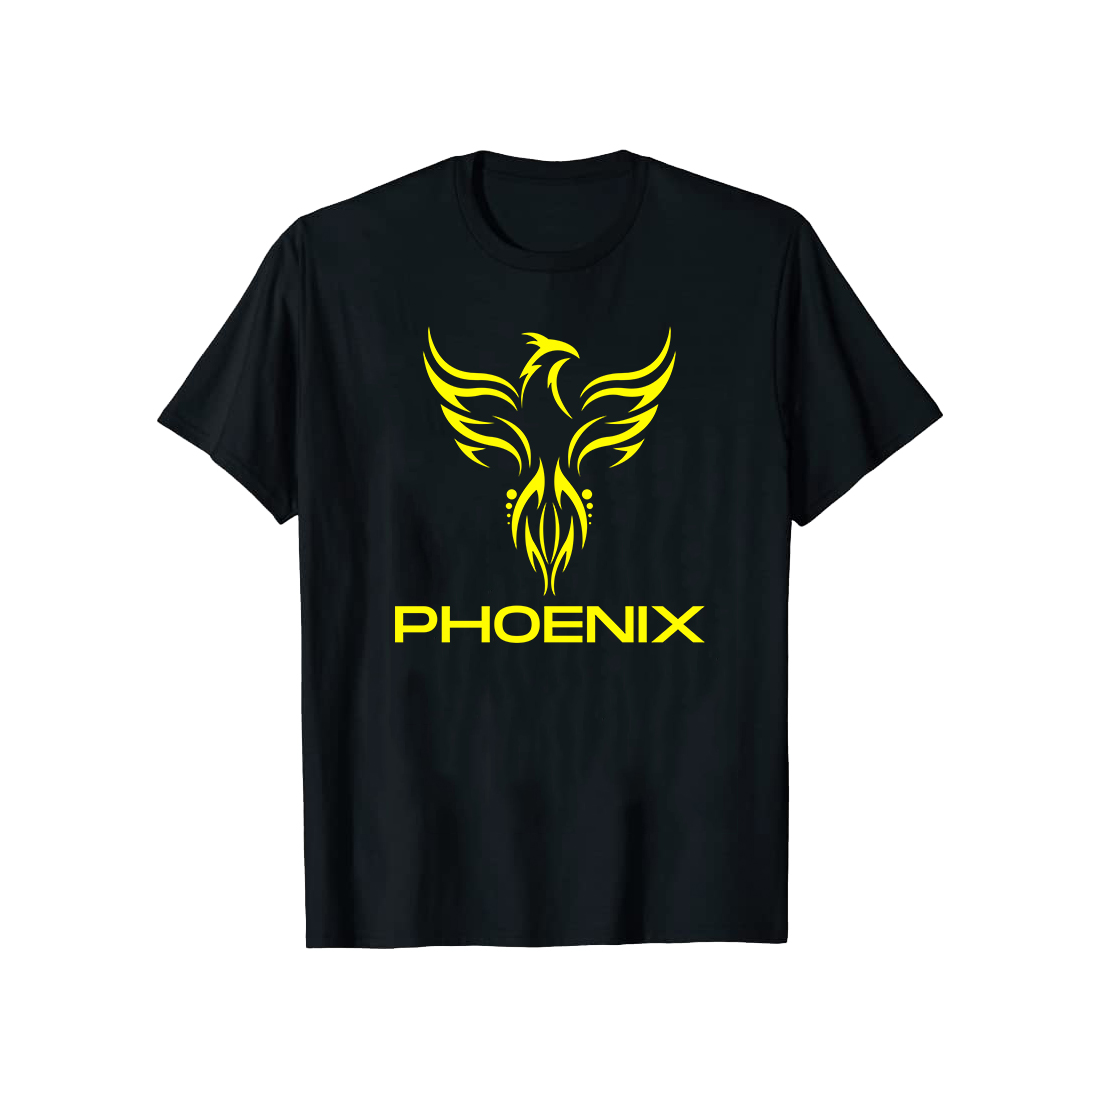 Phoenix eagle t-shirt design preview image.